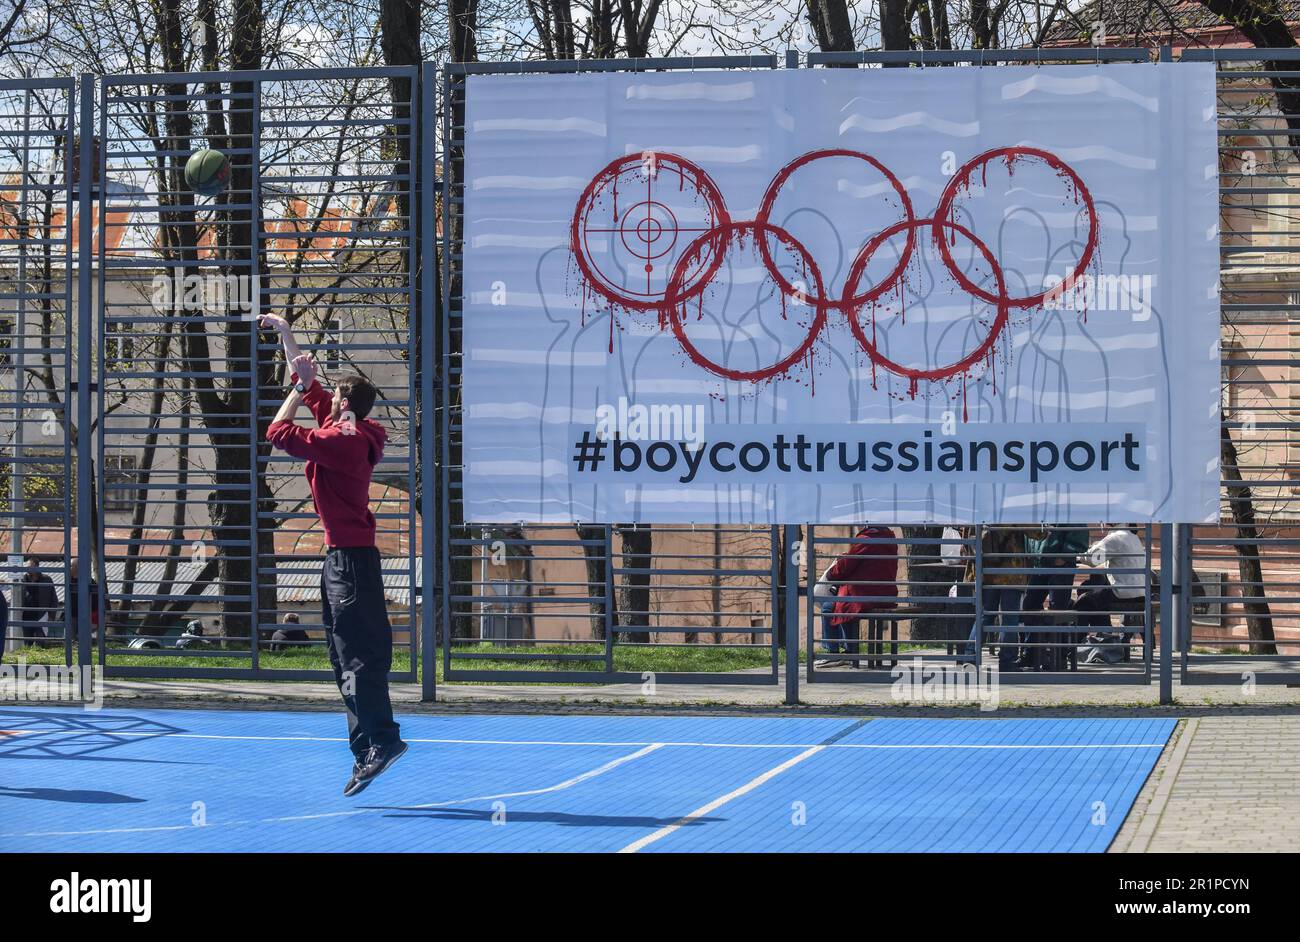 Une personne joue au basket-ball sur fond de bannière avec l'inscription #BoycottRussianSport dans l'un des terrains de sport de Lviv. L’Ukraine et de nombreux pays dans le monde exigent que les athlètes russes soient interdits aux Jeux Olympiques et autres compétitions internationales en raison de la guerre russo-ukrainienne lancée par la Russie. De nombreux athlètes ukrainiens qui ont défendu l'Ukraine contre l'agresseur russe sont déjà morts dans cette guerre. Pour soutenir le boycott, une bannière portant l'inscription #BoycottRussianSport a été accrochée à l'un des terrains de sport de Lviv. Banque D'Images